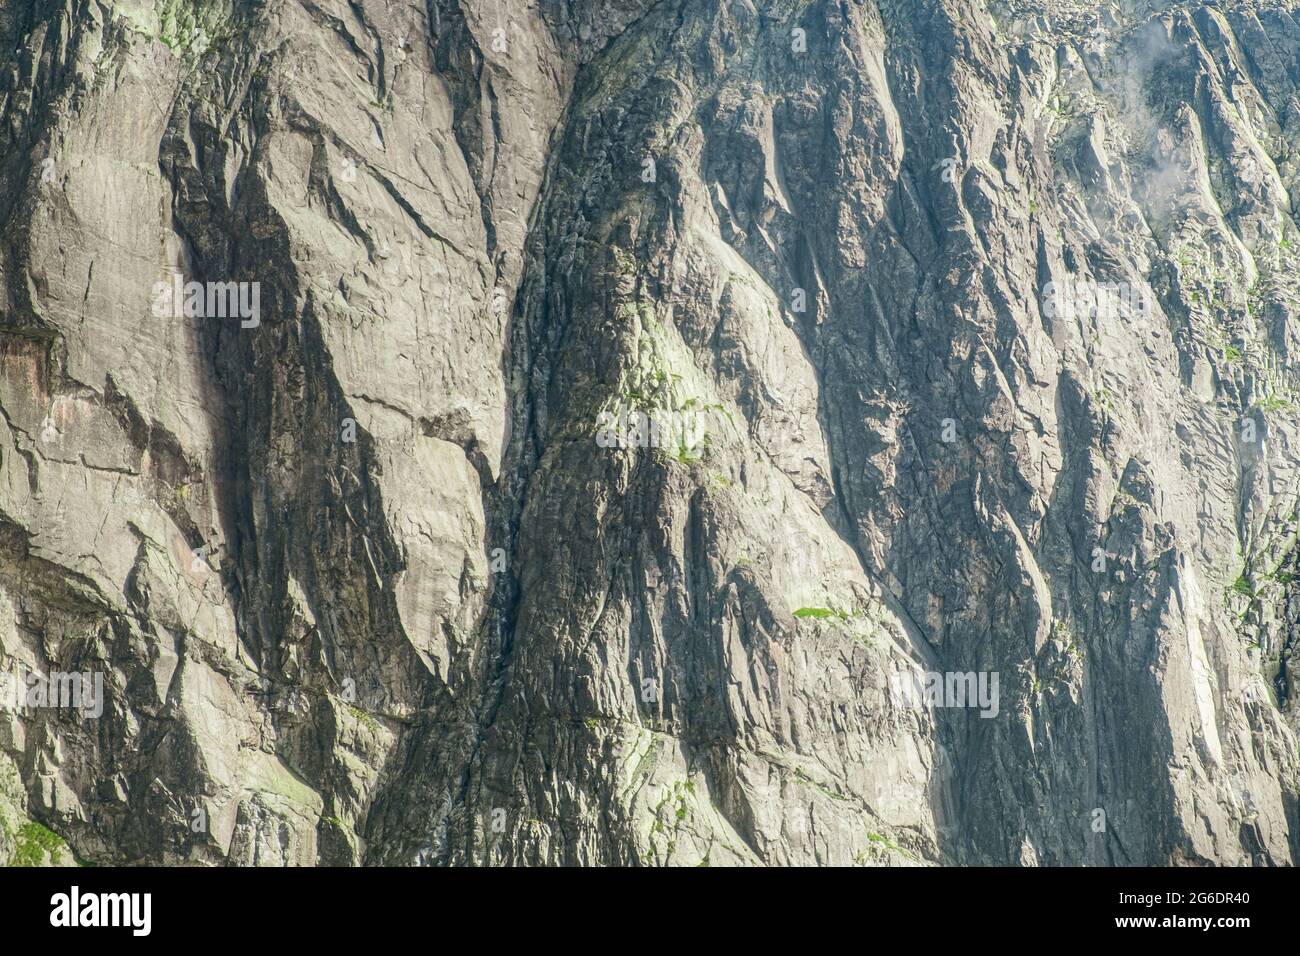 Primo piano roccia della catena montuosa con piante verdi Foto Stock